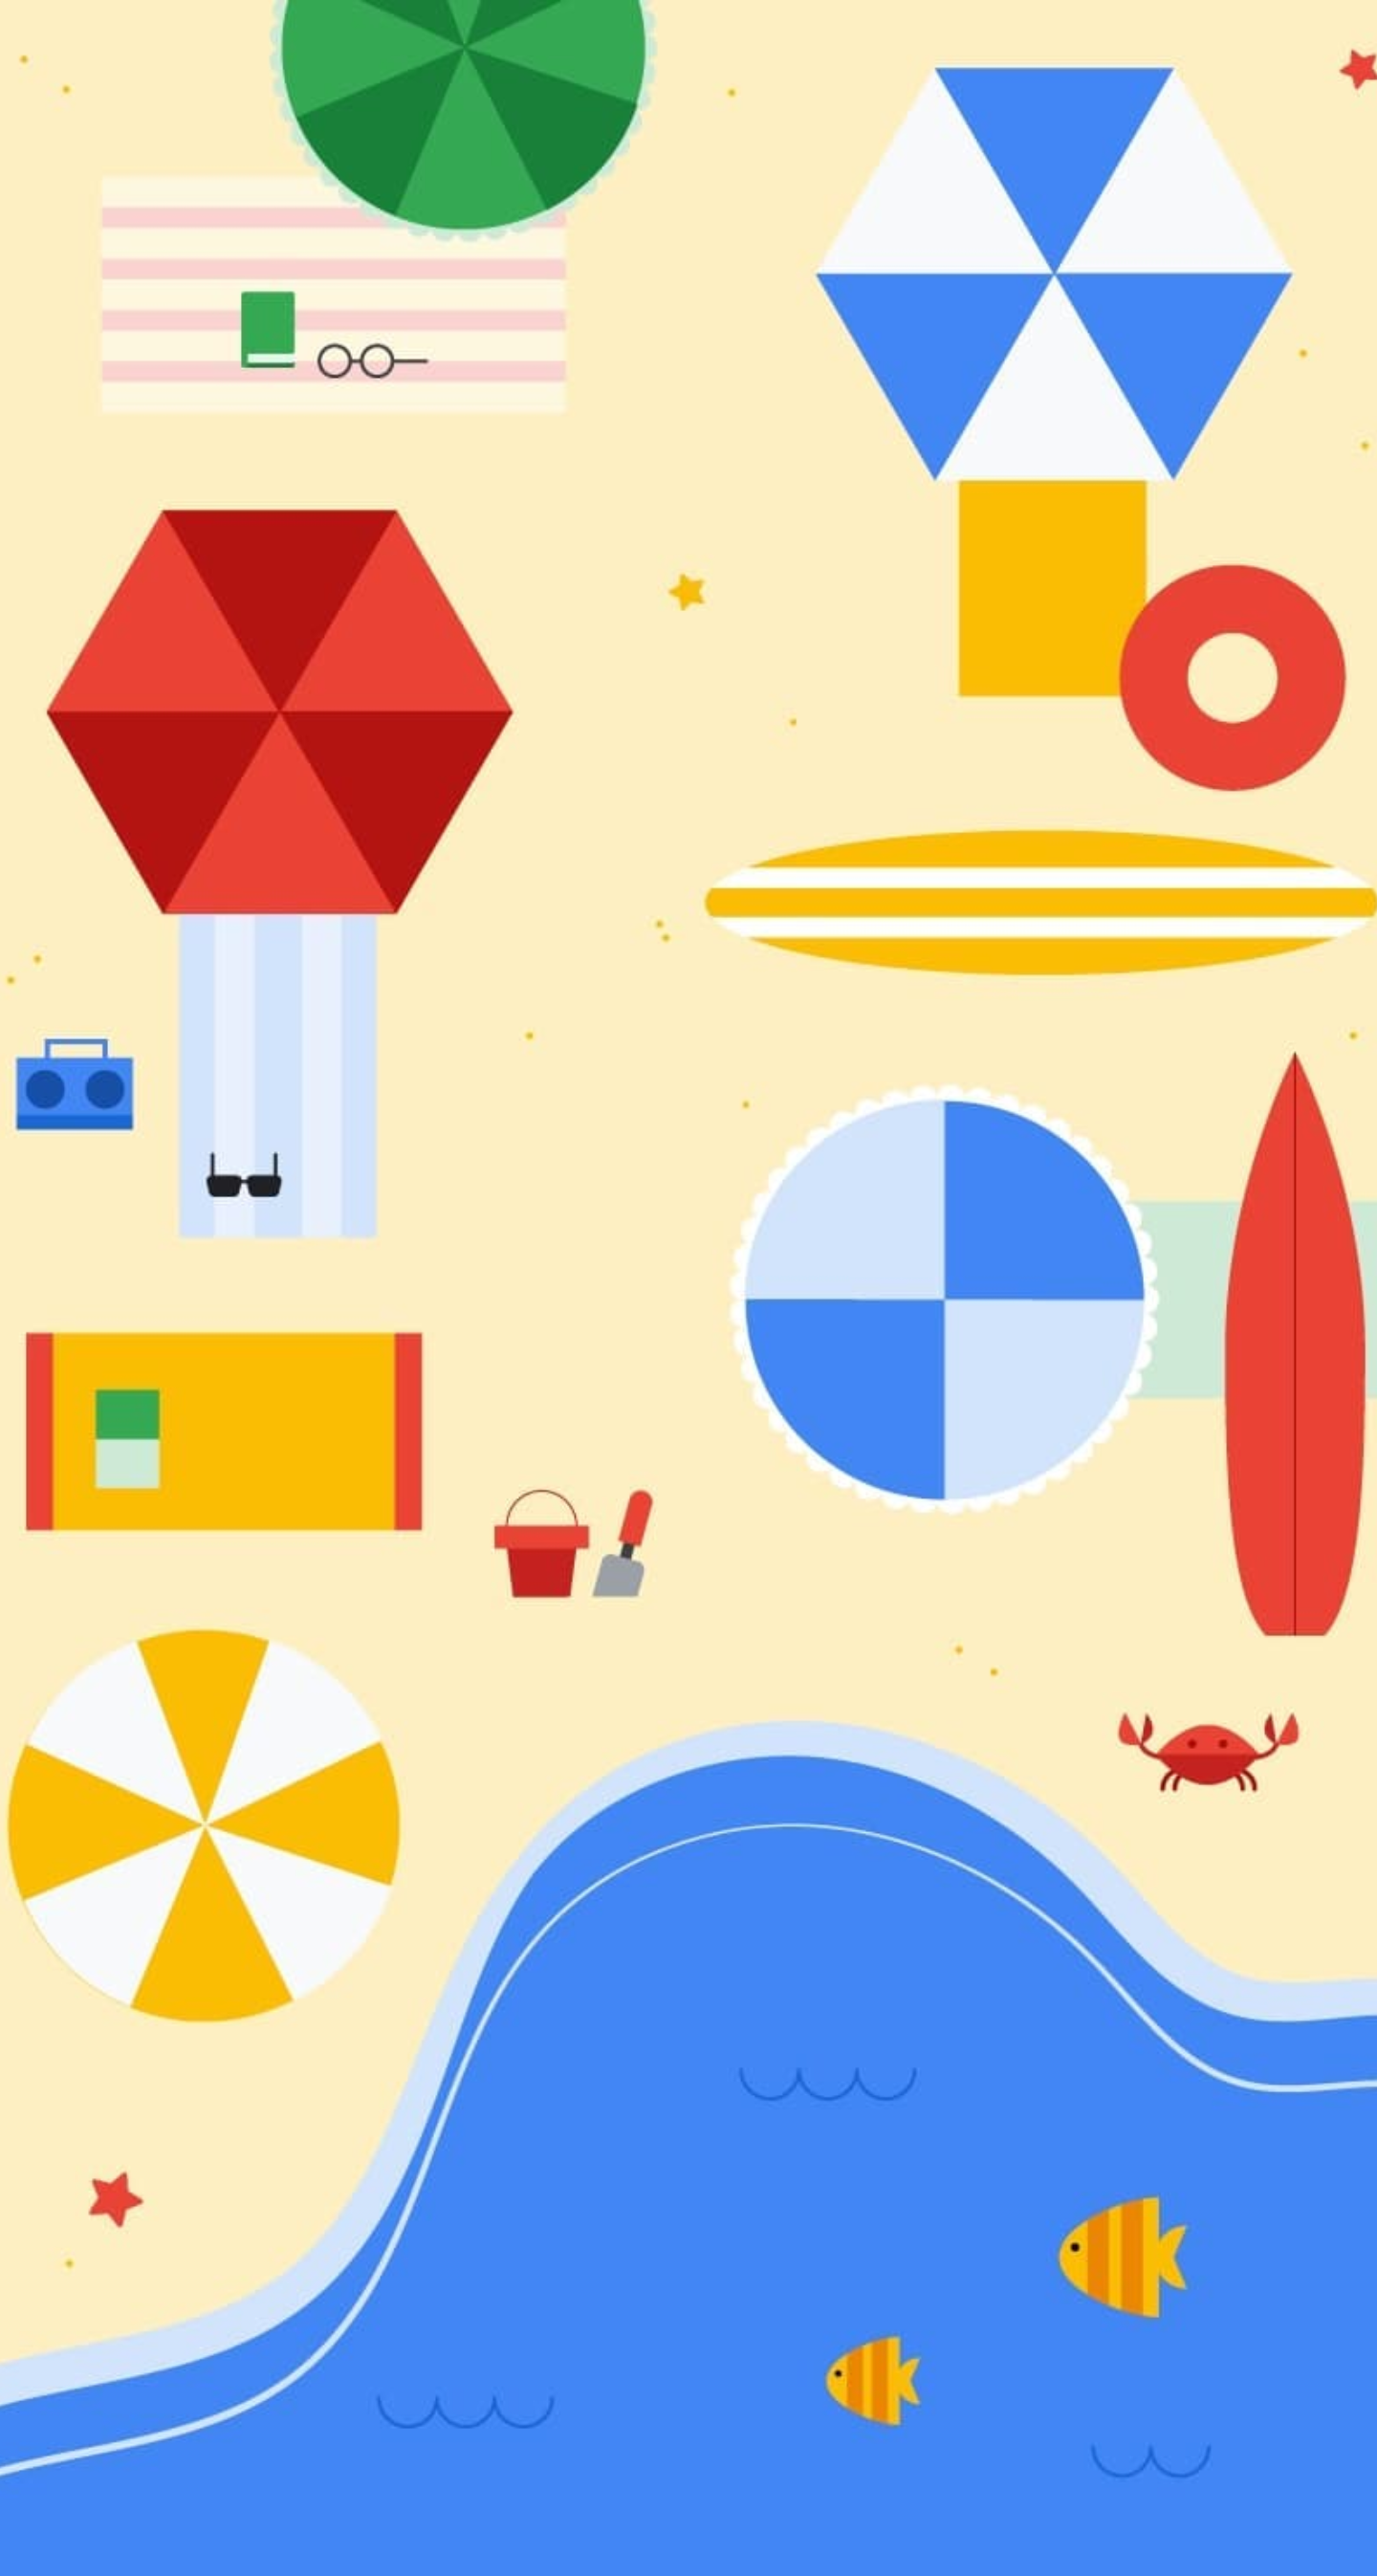 โหลด Wallpaper น่ารักๆ ต้อนรับฤดูร้อนจาก Google พร้อมกับภาพปริศนาที่อาจซ่อนชื่อของ Android P เอาไว้